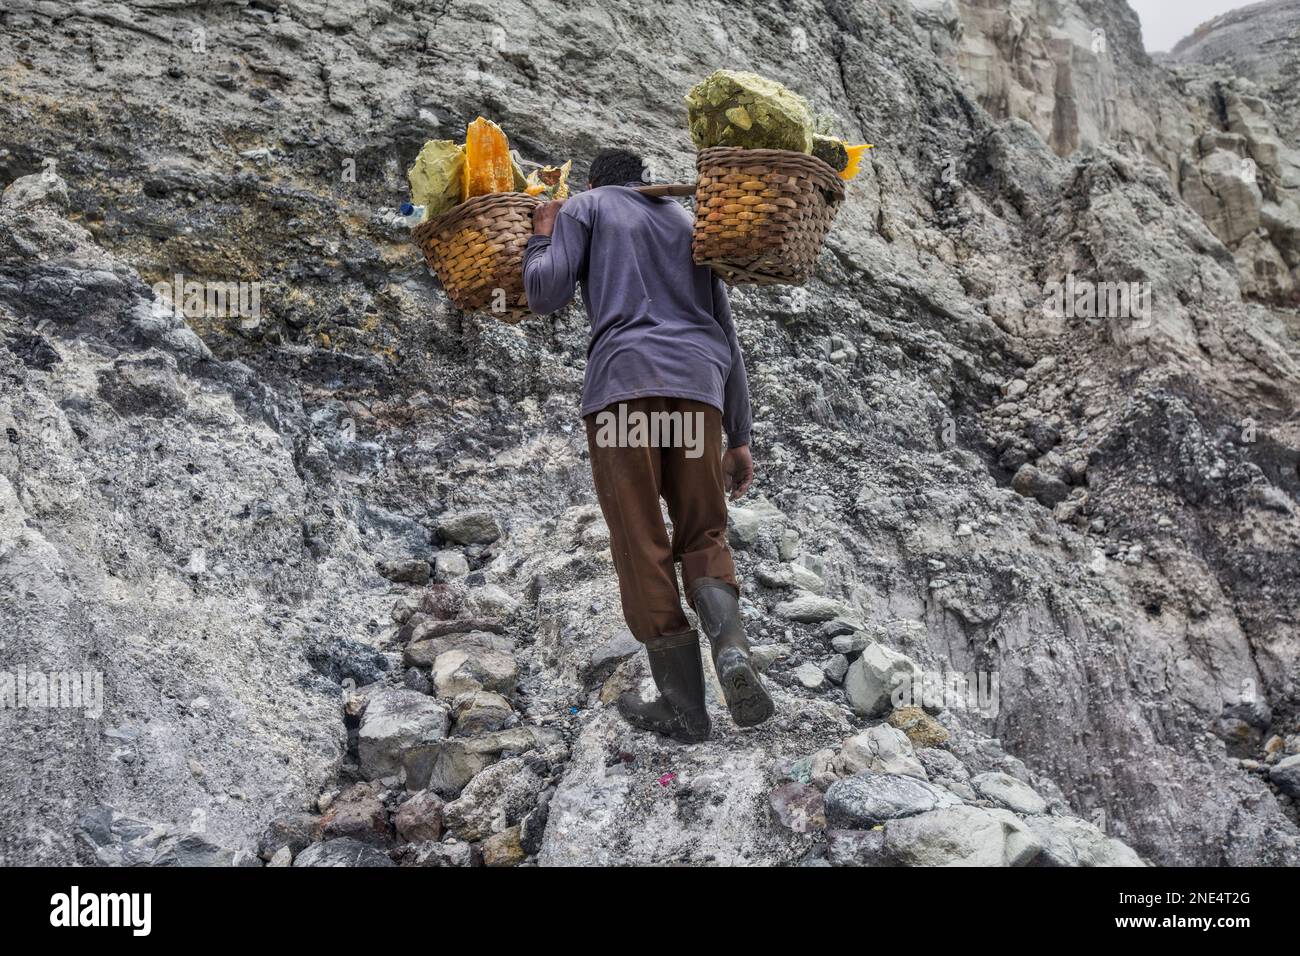 Ijen sulphur mining, Java, Indonesia Stock Photo